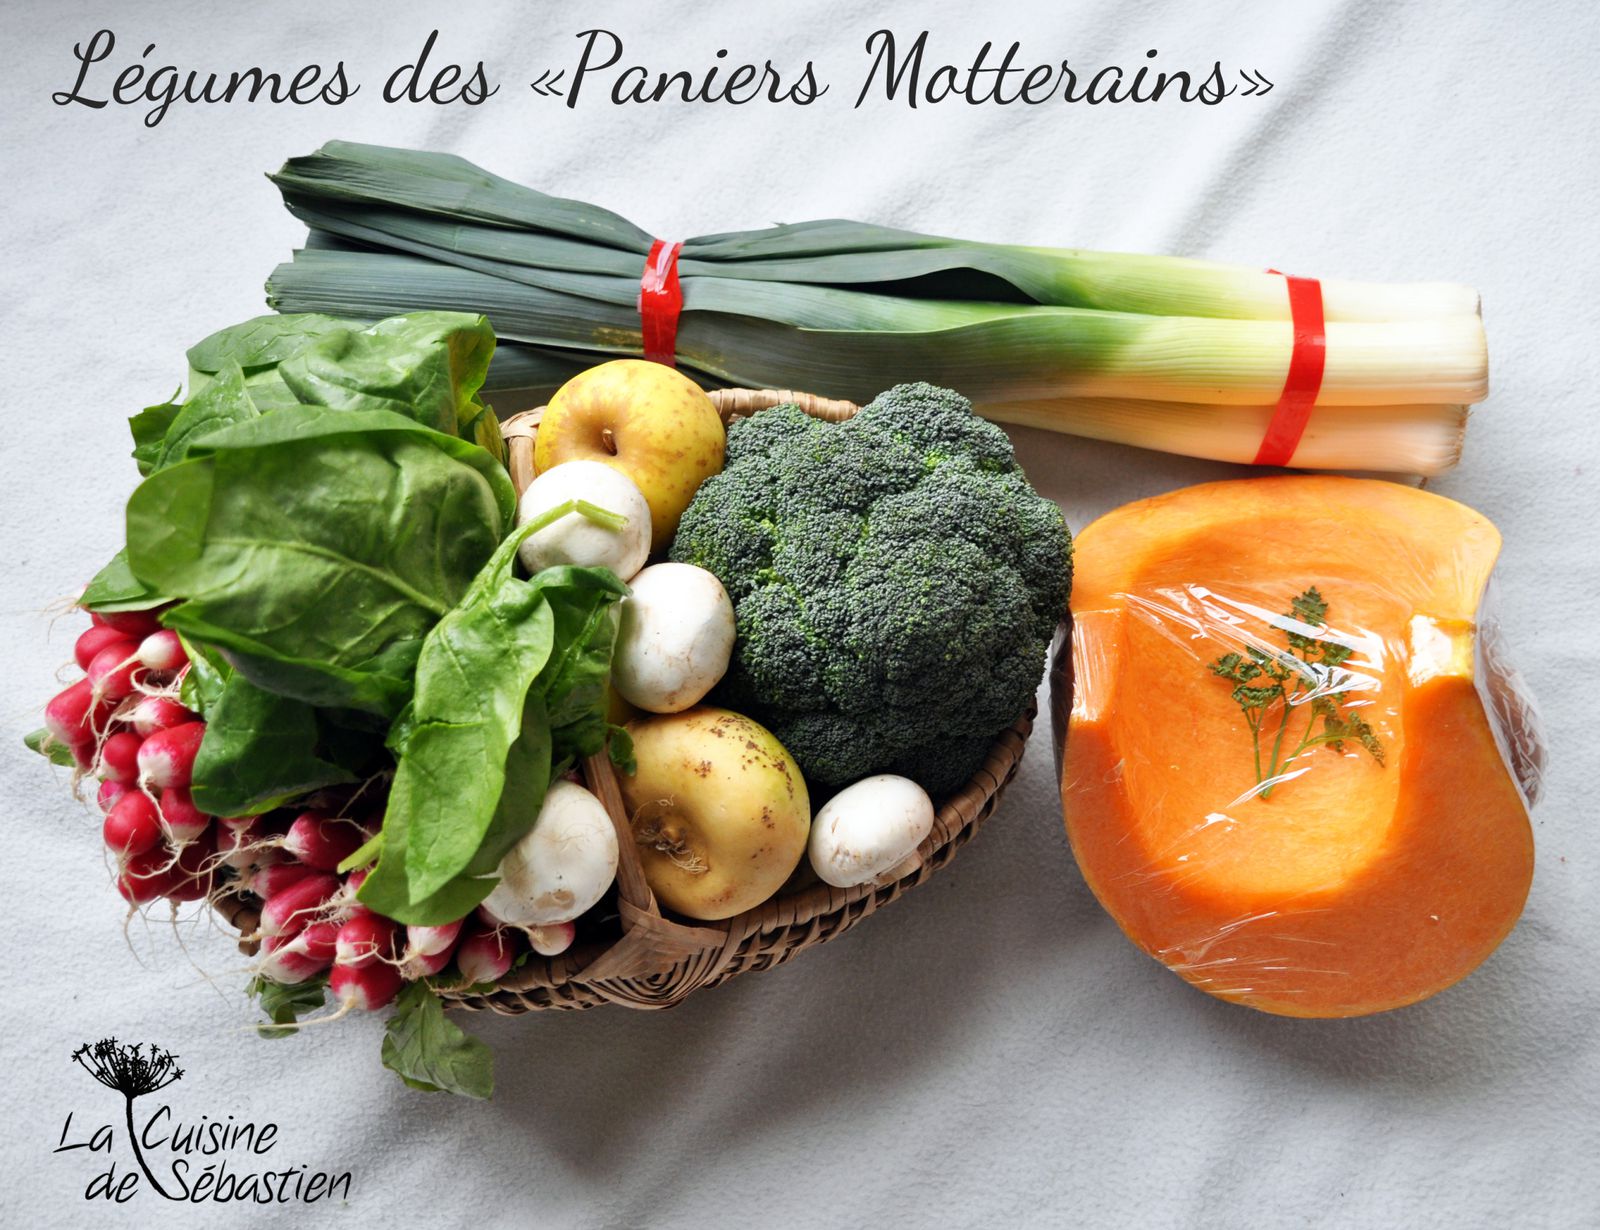 Les Paniers Fermiers Motterains - La Cuisine de Sébastien